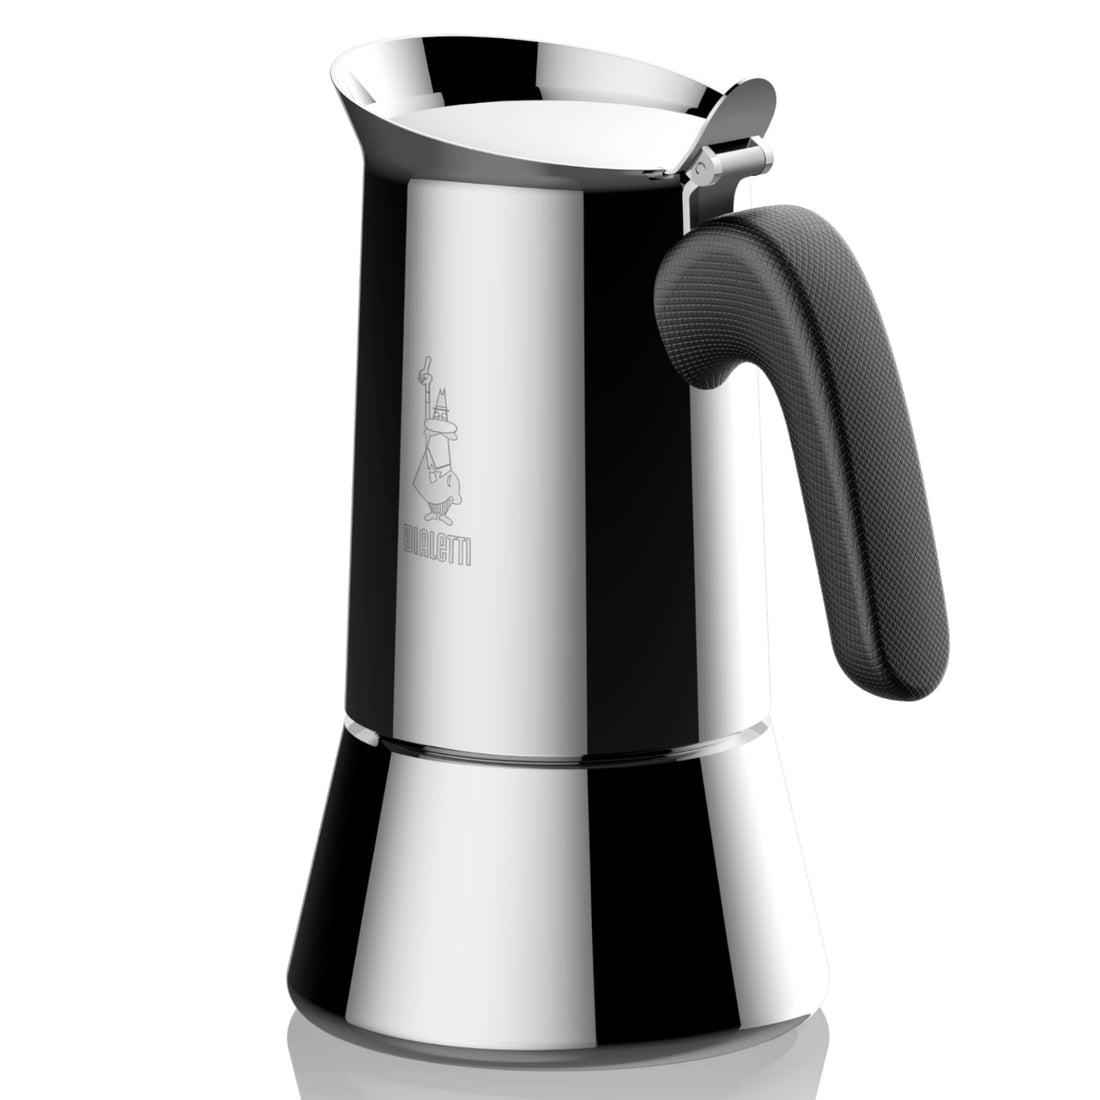 Bialetti Venus Induction 6 Cup Espresso Pot